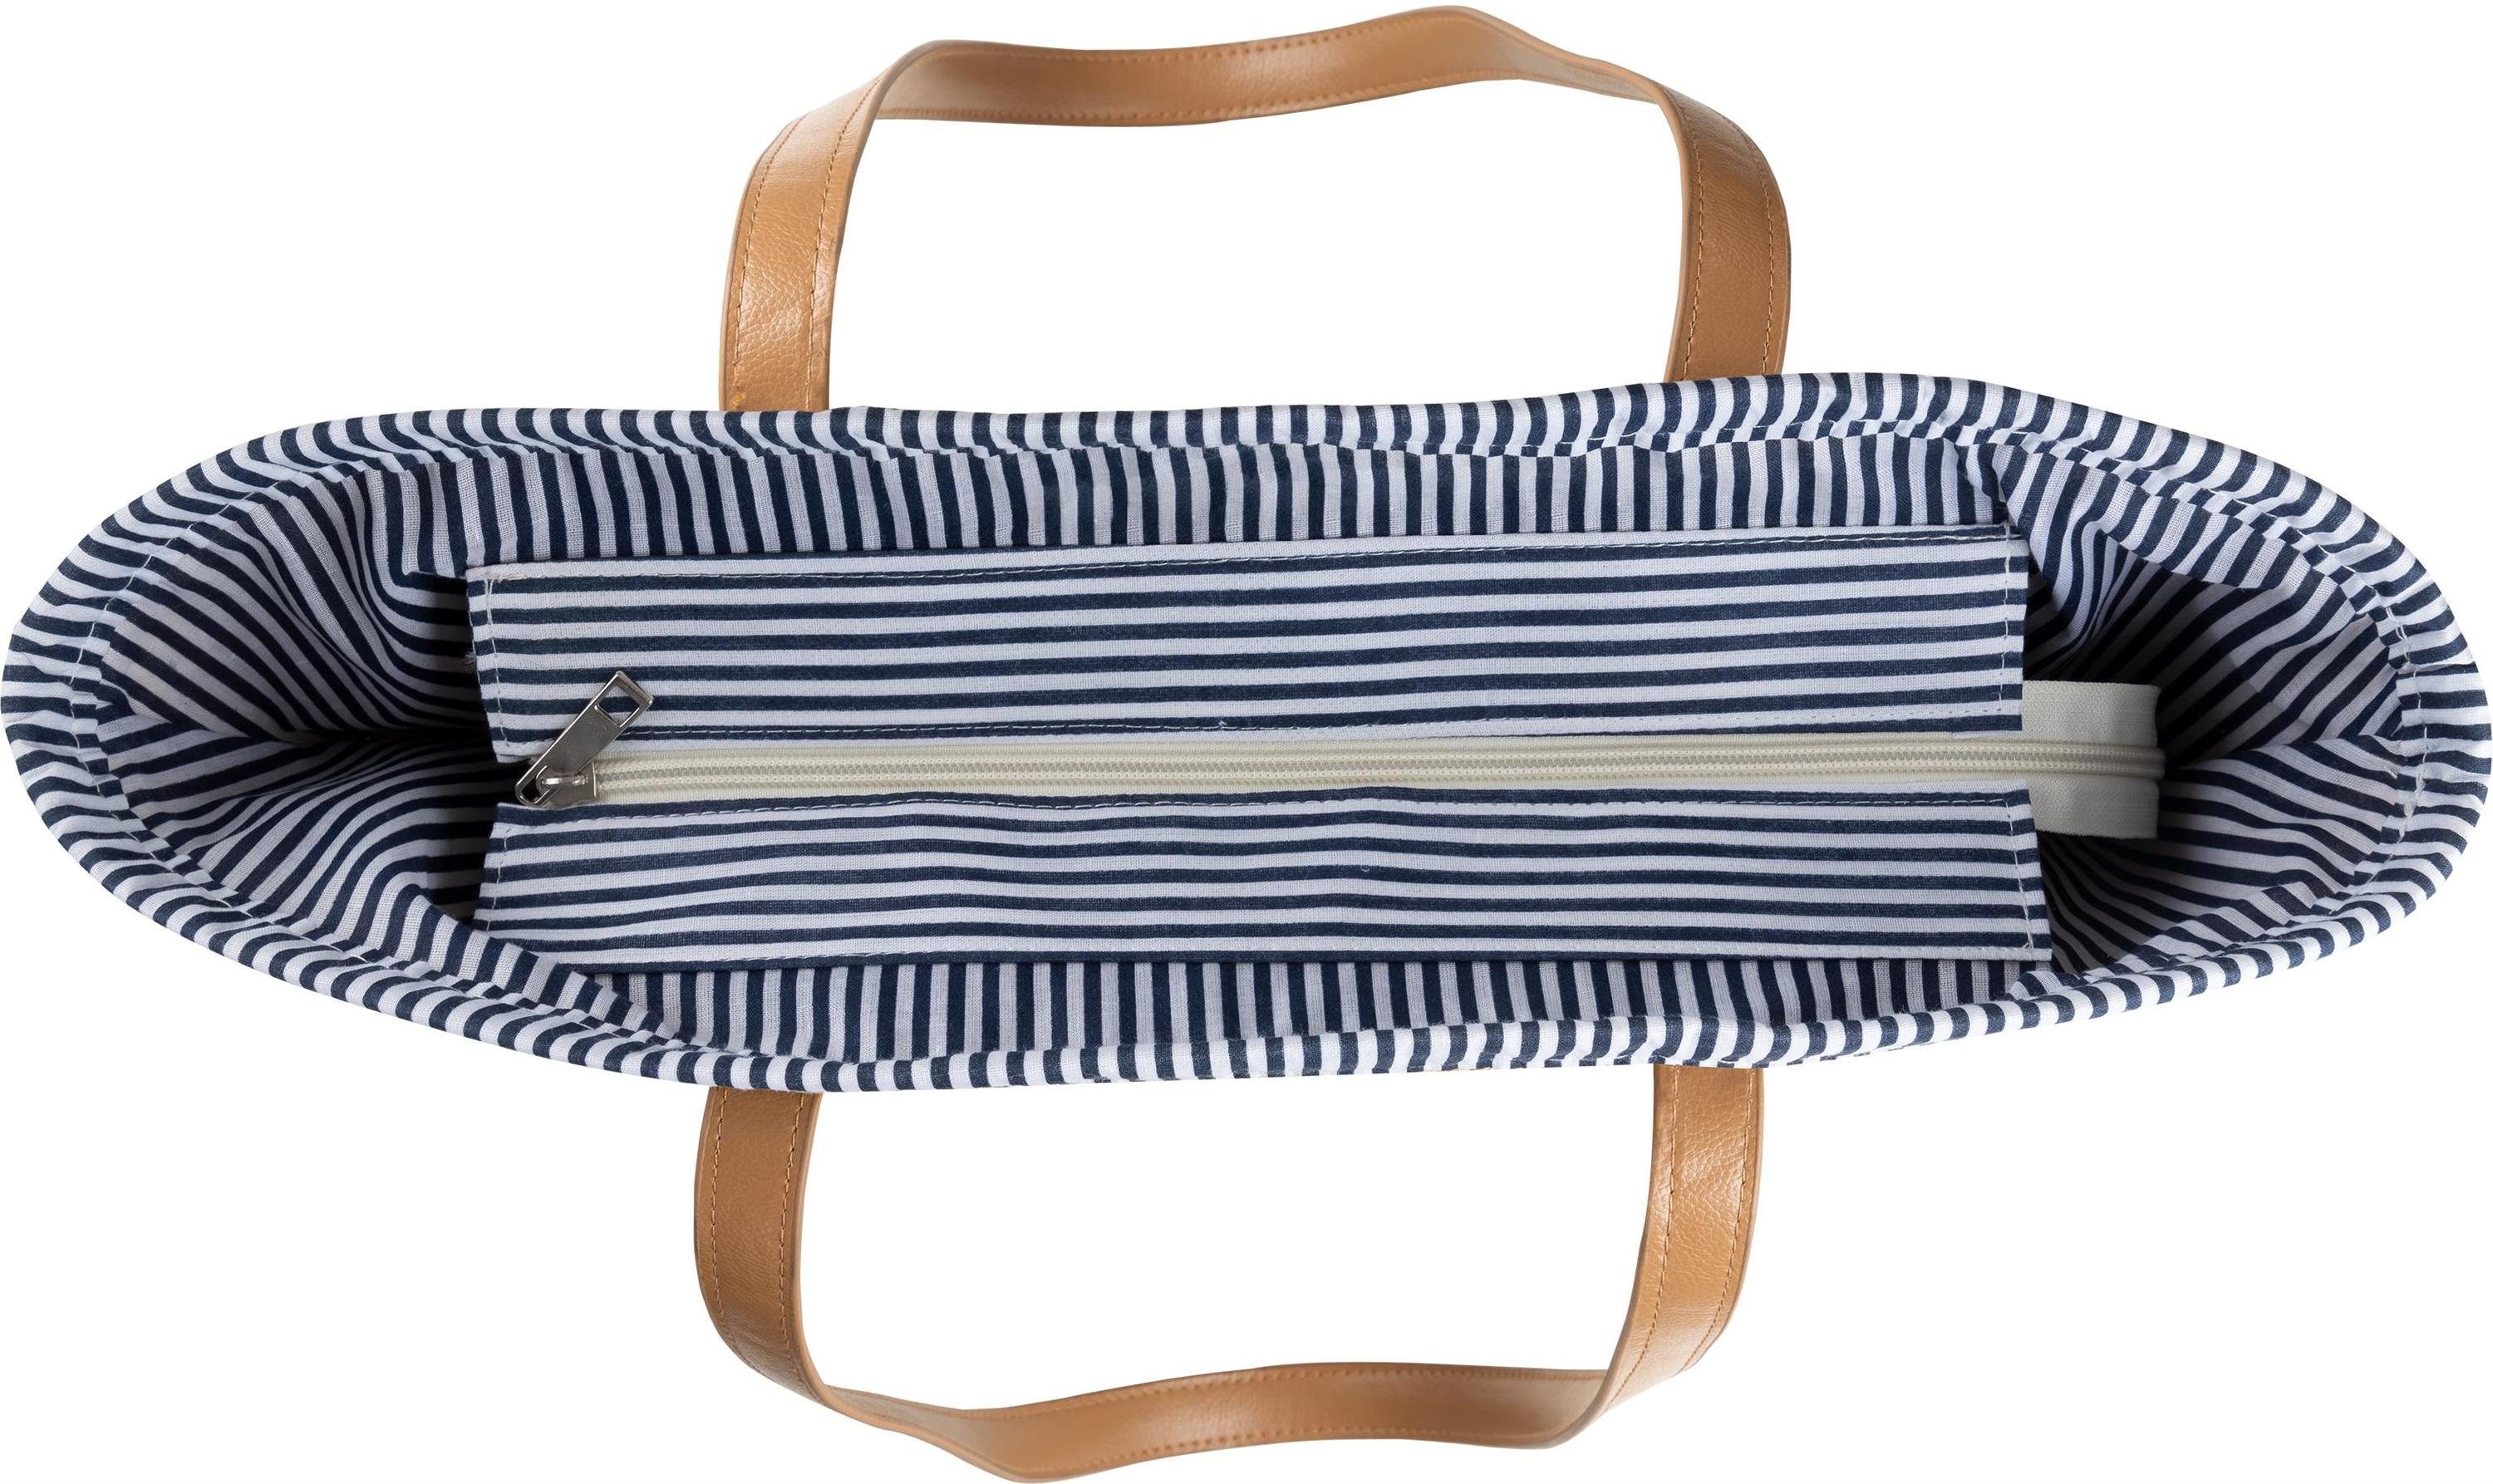 Stroh im Damen Strandtasche Janice Liter Mindanao, aus Strandtasche Maritim-Look Sommertasche 10 für